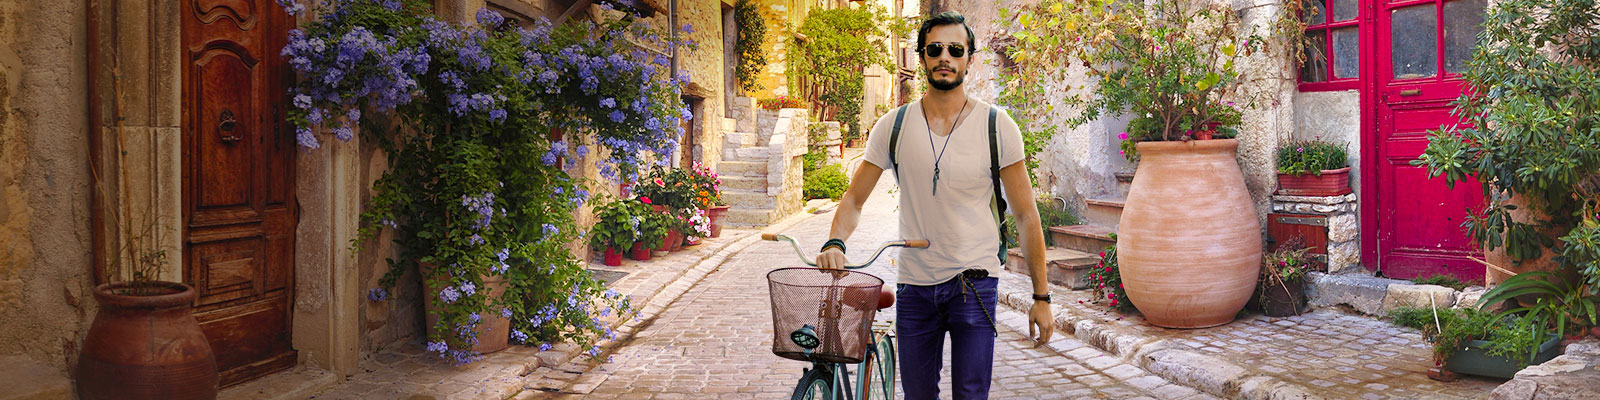 Joven con bicicleta paseando por las callejuelas de Niza